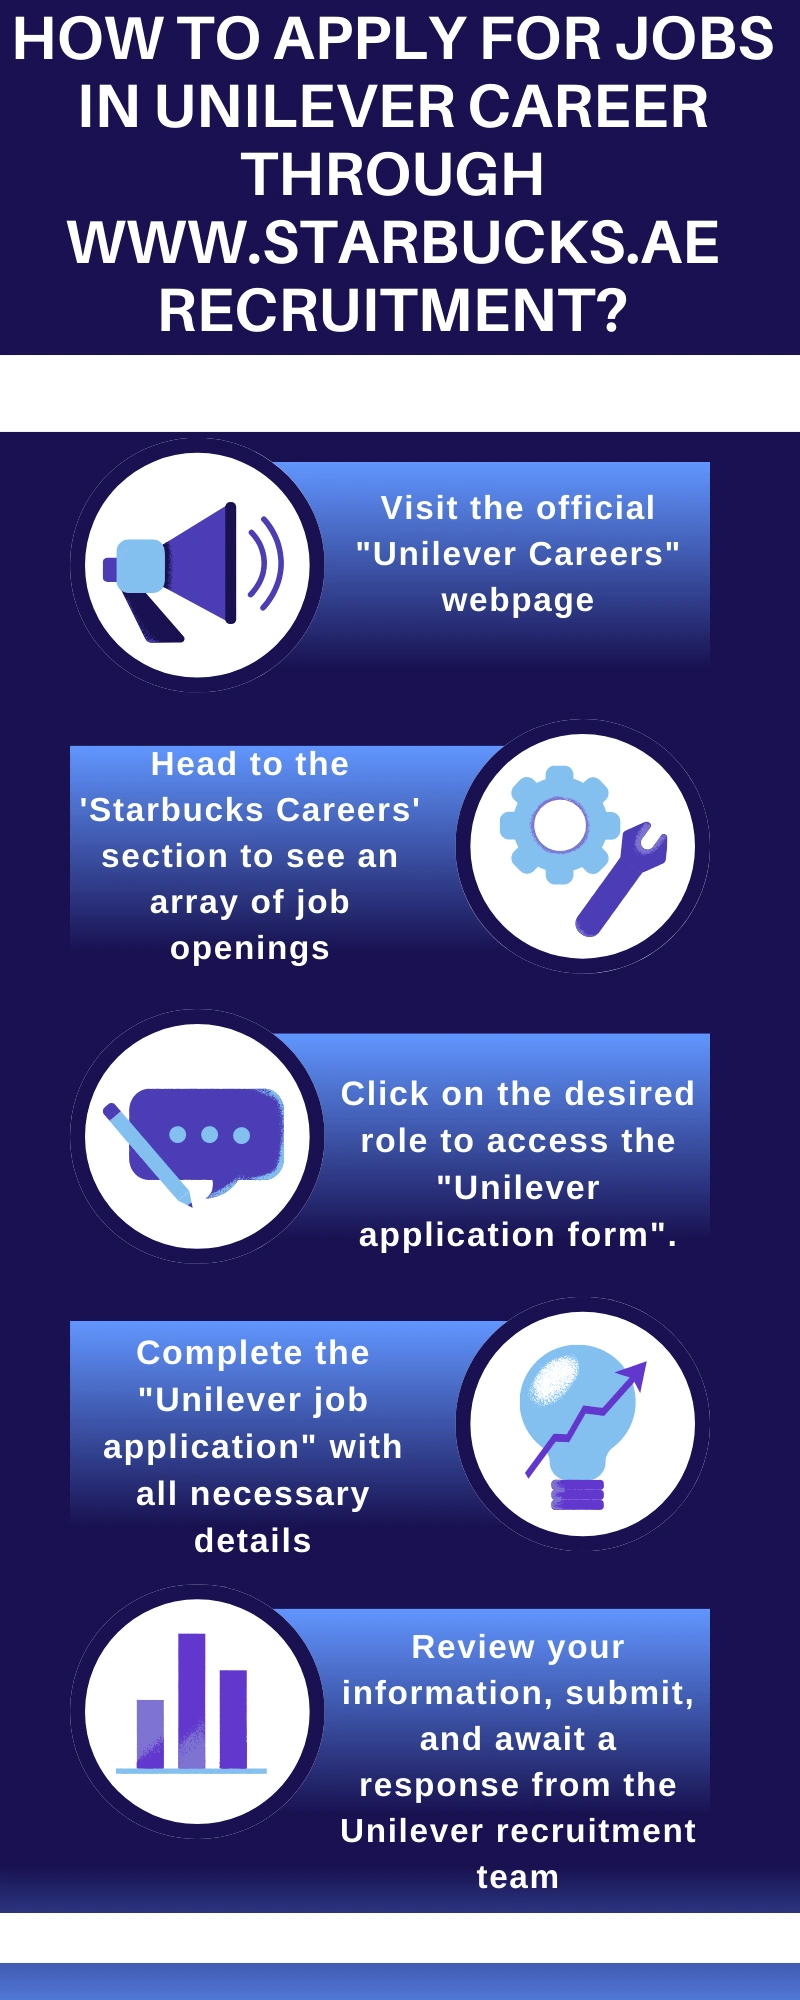 How to Apply for Jobs in Unilever Career through www.starbucks.ae recruitment?